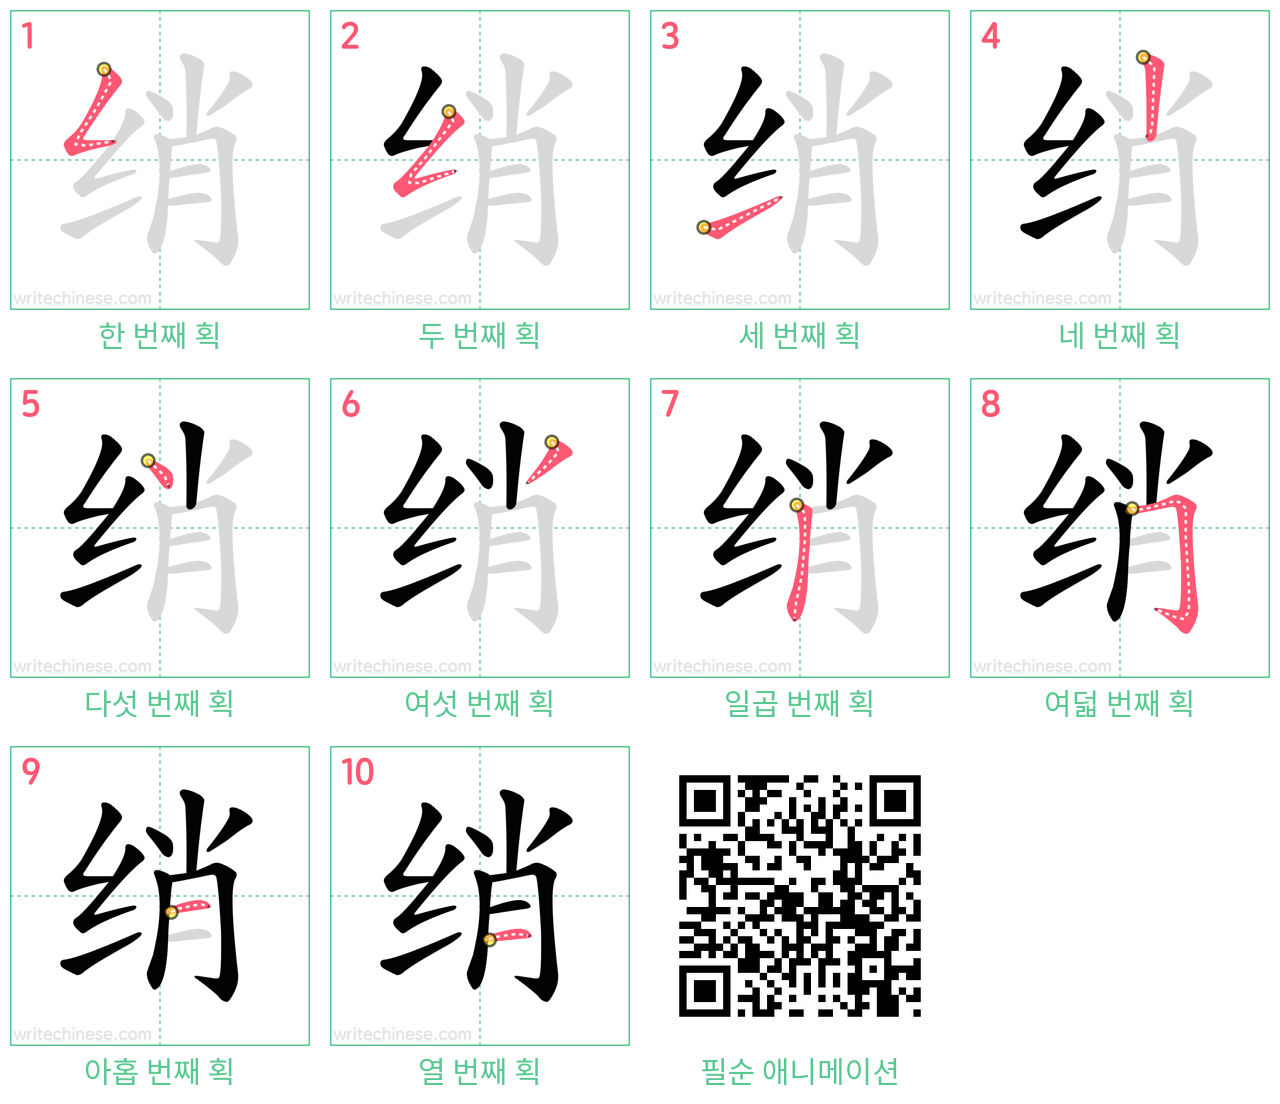 绡 step-by-step stroke order diagrams